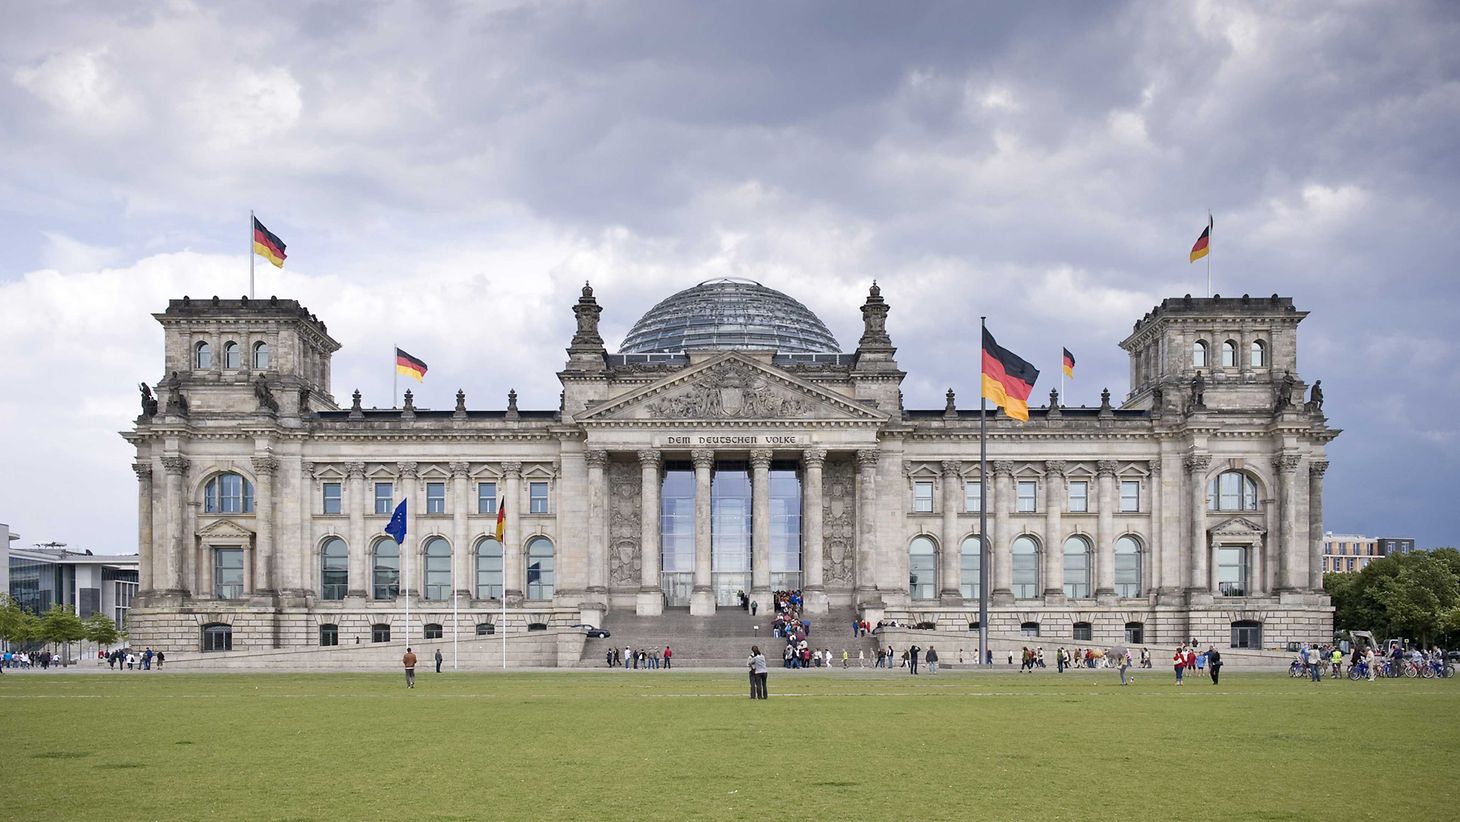 Deutscher Bundestag - Reichstagsgebäude